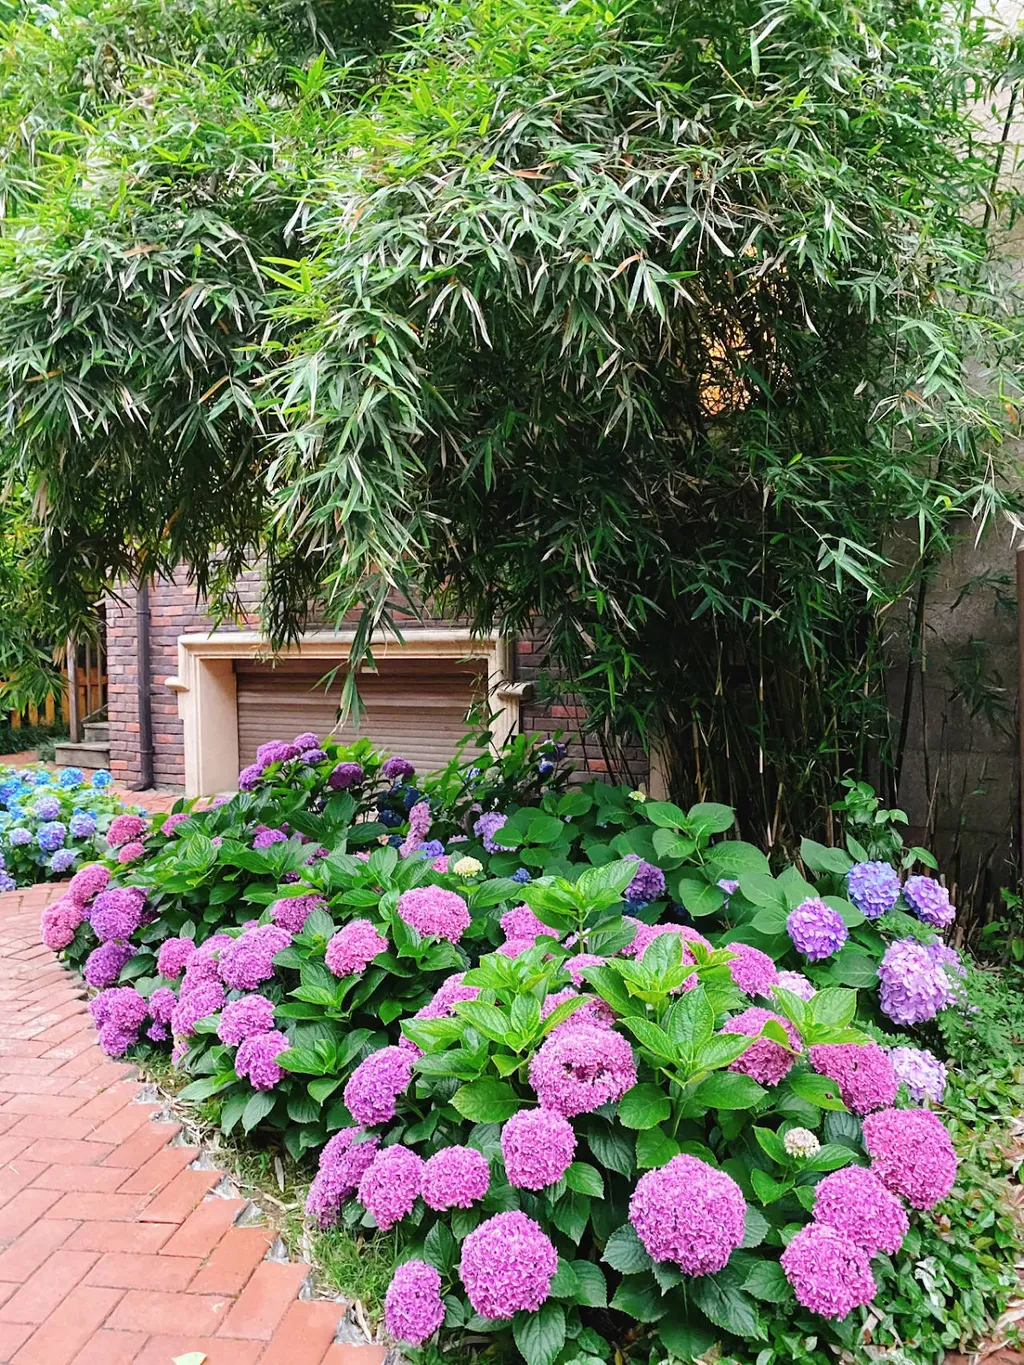 Sắp xếp các chậu hoa cẩm tú cầu dọc theo lối đi hoặc đặt chúng trên các bậc thang hoặc bàn đá. Điều này sẽ tạo ra một con đường rực rỡ và lôi cuốn, đặc biệt vào mùa hè khi hoa nở rộ.